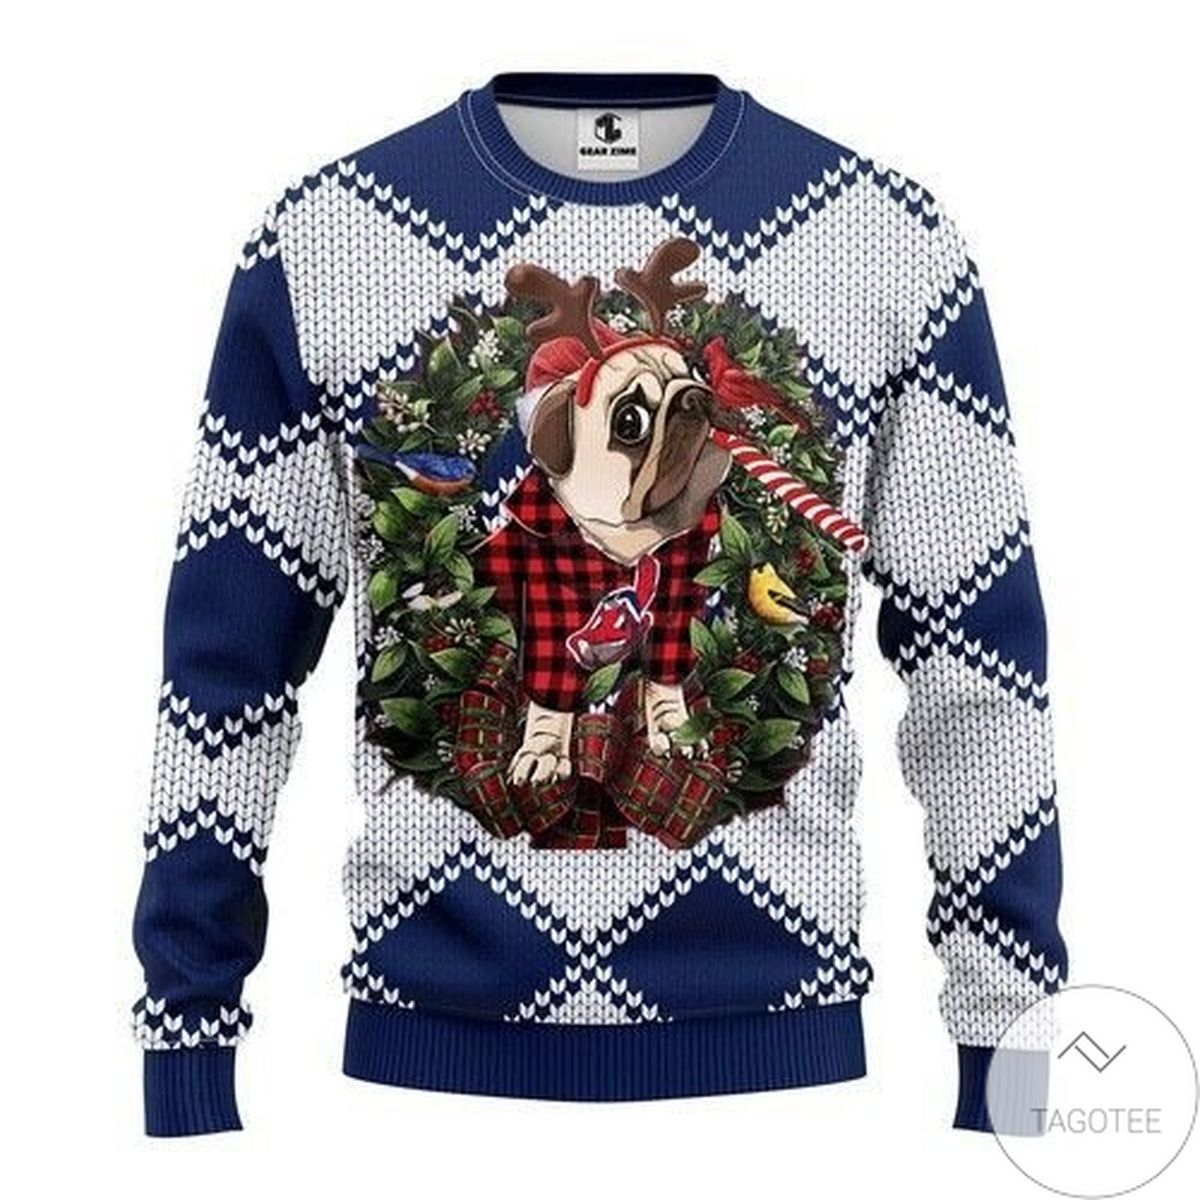 Mlb Cleveland Indians Pug Dog Ugly Christmas Sweater